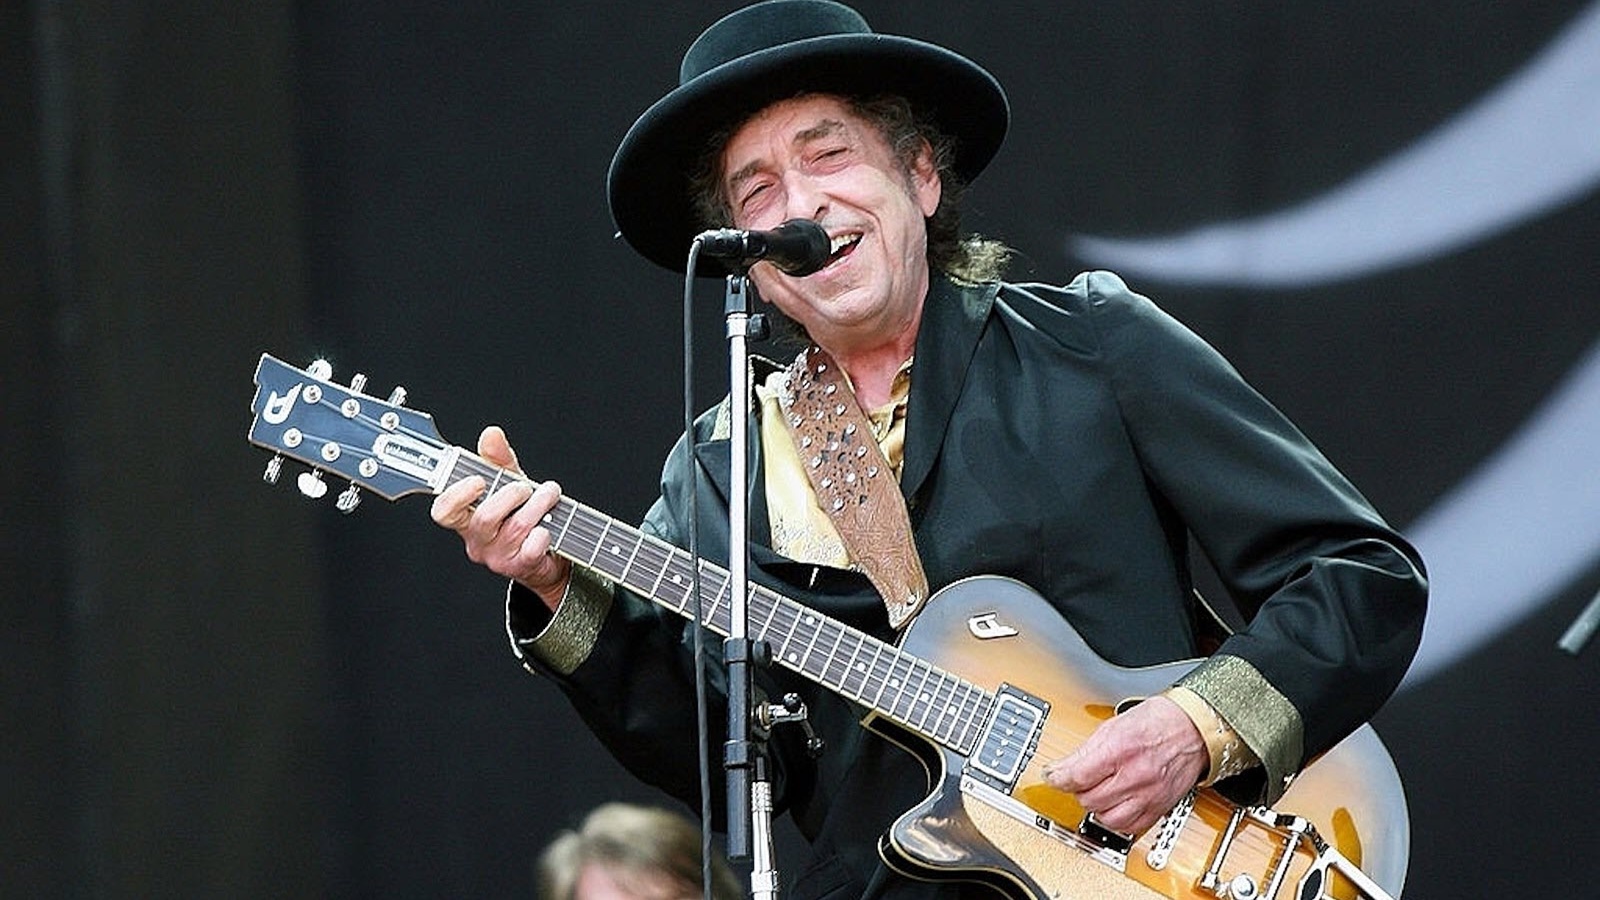 A Complete Unknown, Bob Dylan ha aiutato James Mangold: 'Ho uno script con tutti i suoi appunti'